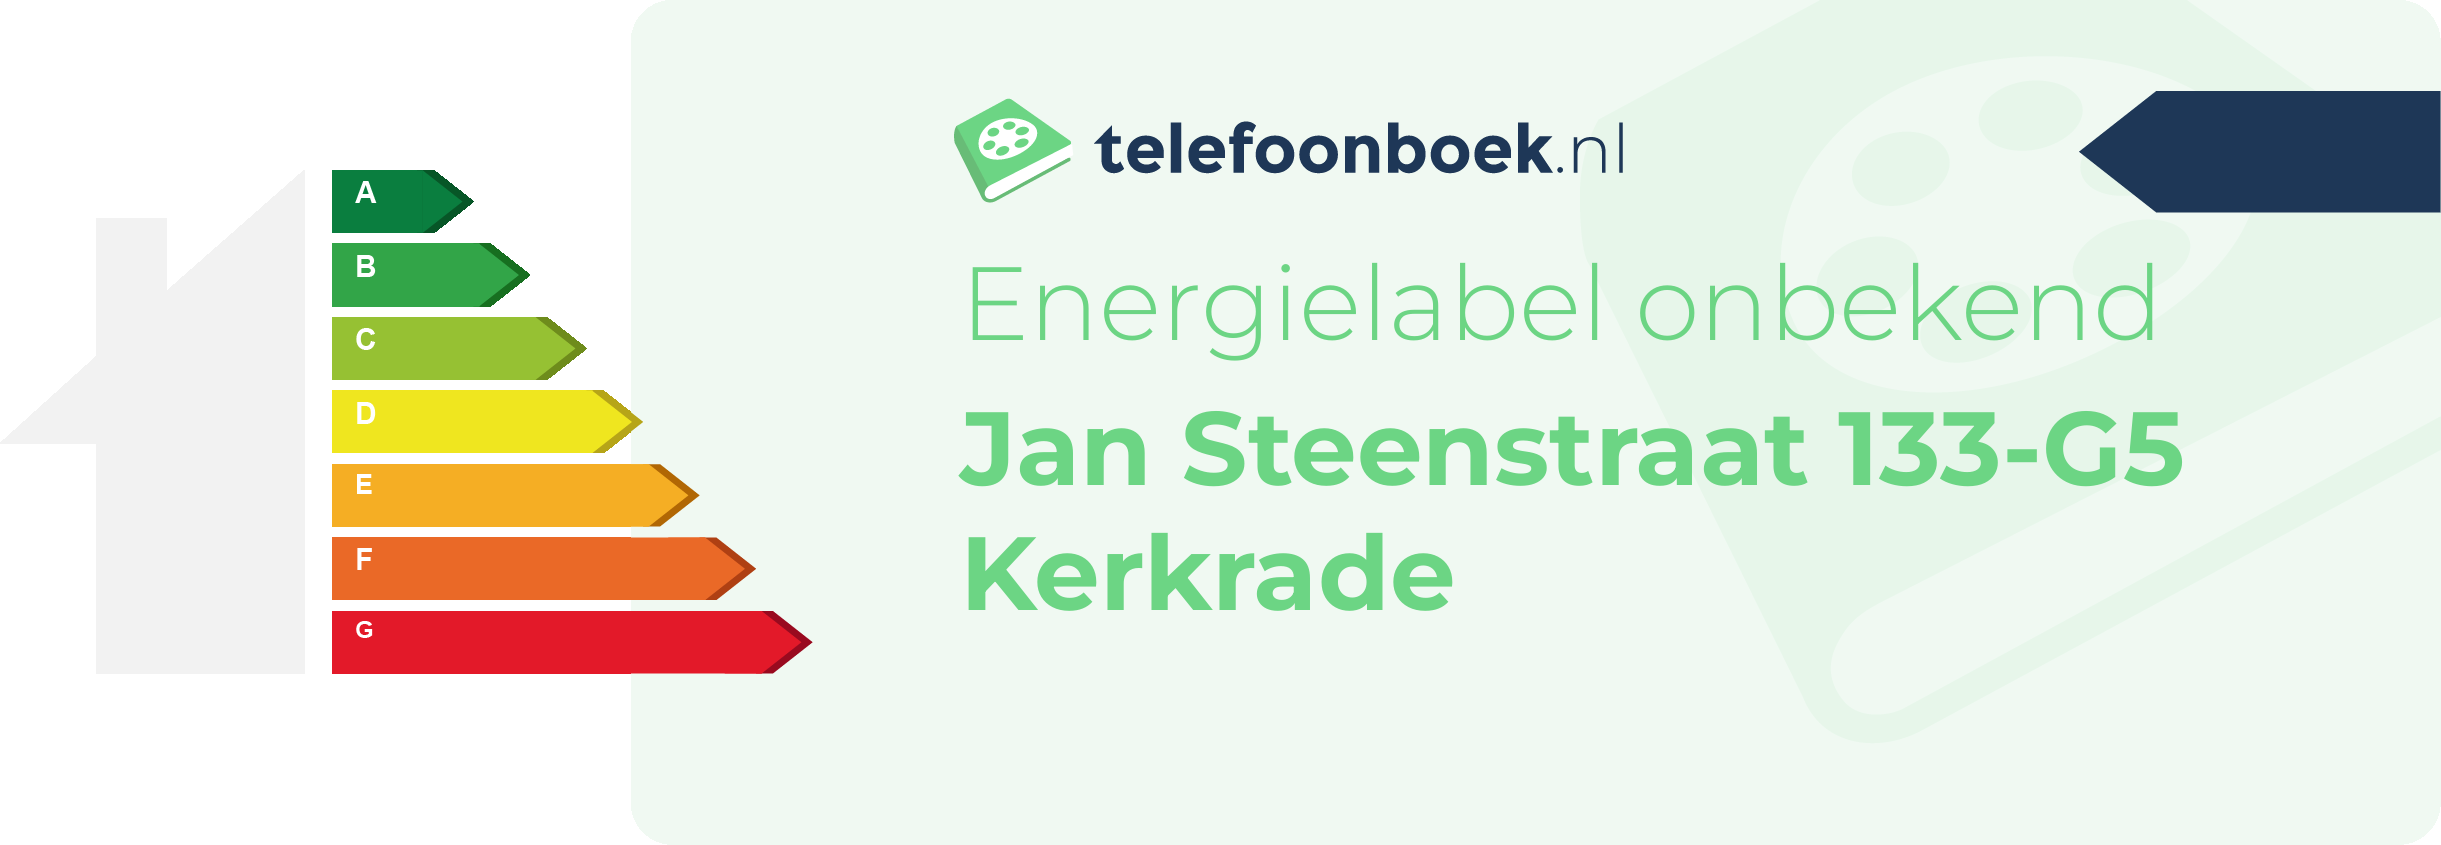 Energielabel Jan Steenstraat 133-G5 Kerkrade